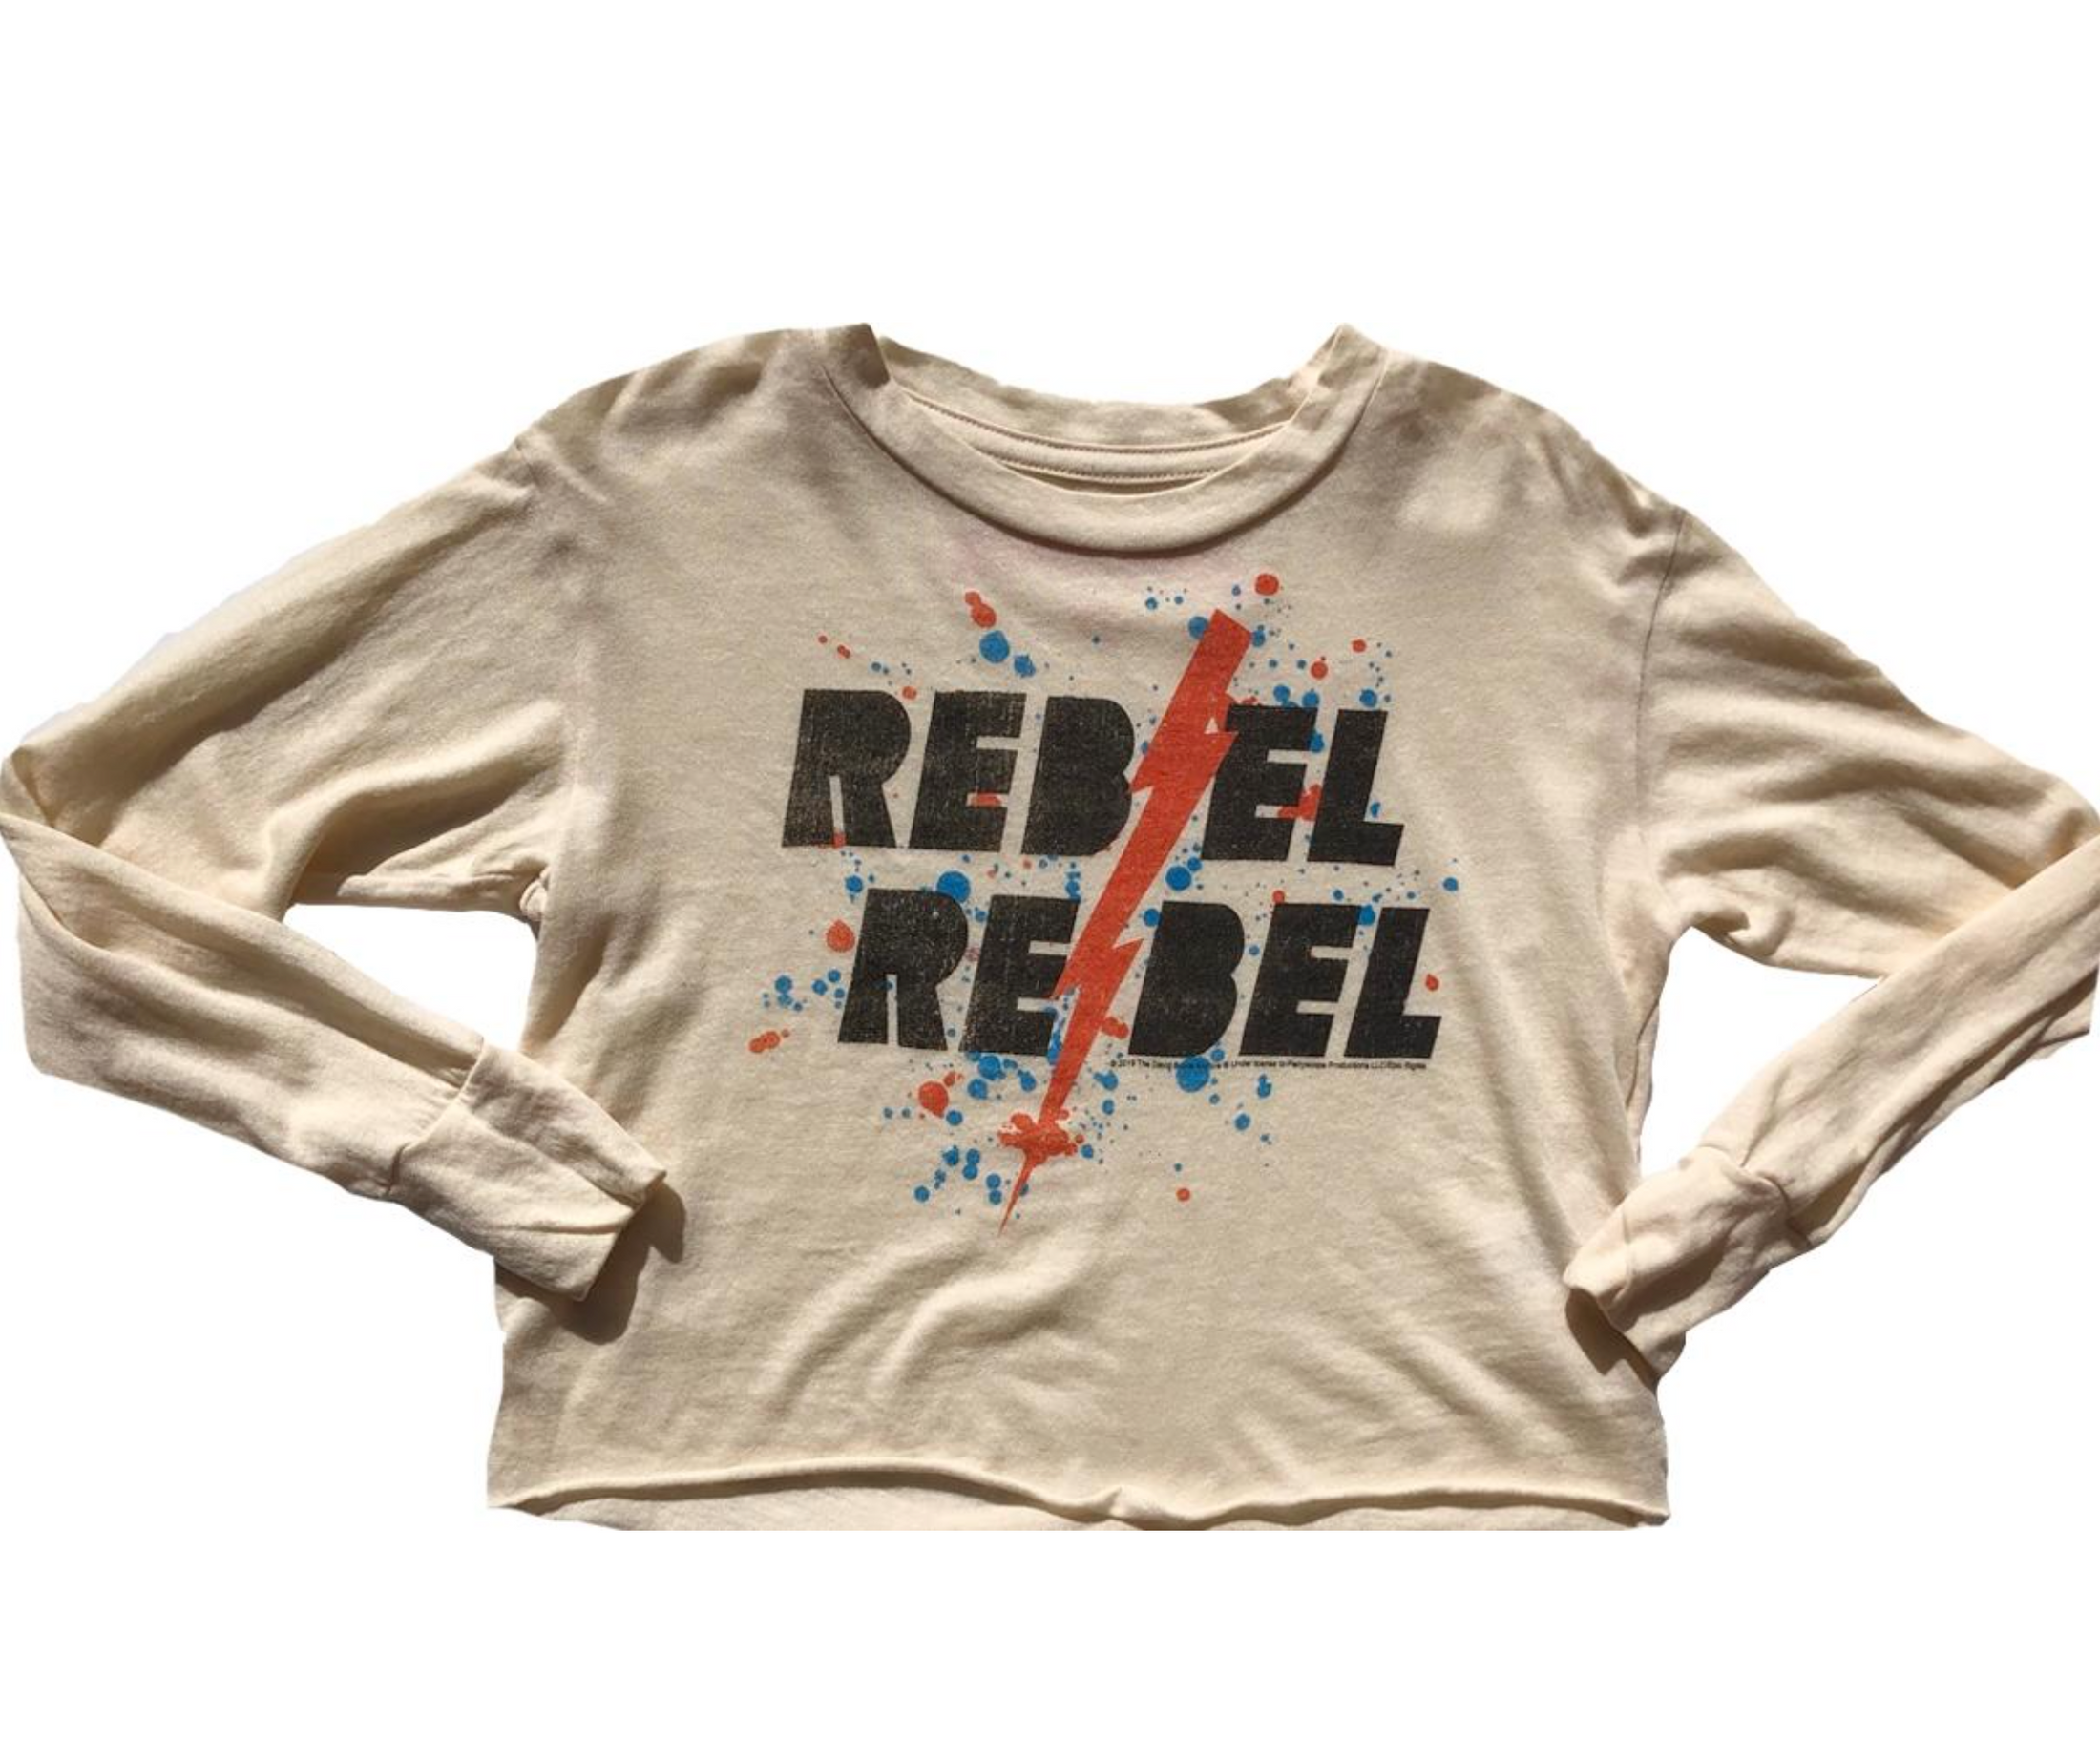 Rebel Rebel Bowie Longsleeve Crop Tee - Cream Soda